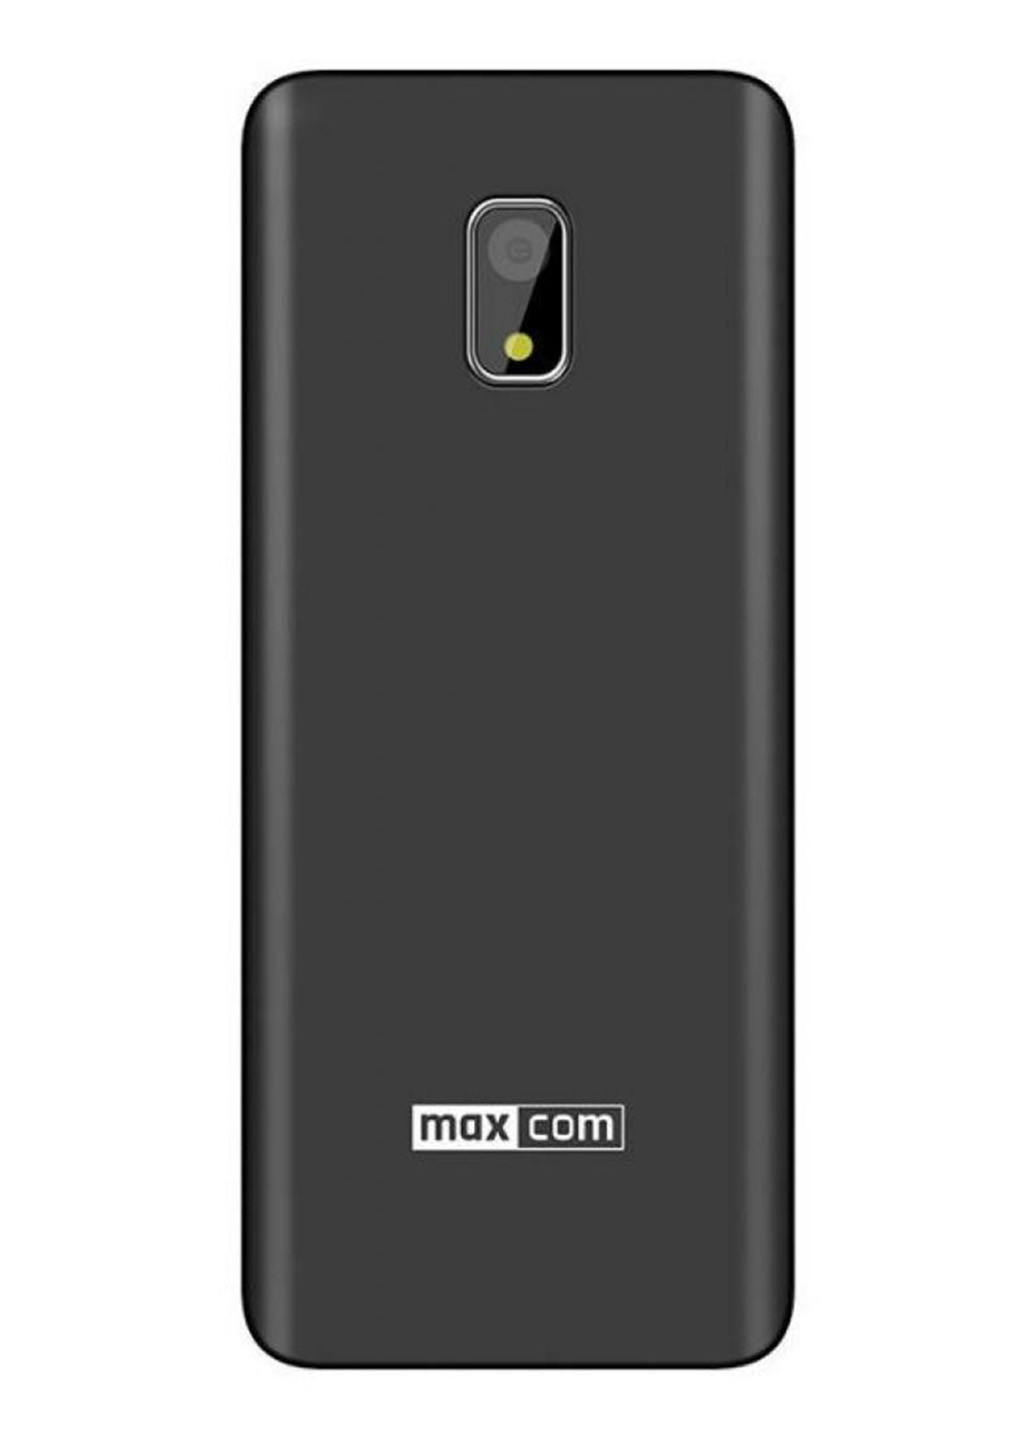 Мобильный телефон MM236 Black-SIlver Maxcom maxcom mm236 black-silver (132824476)